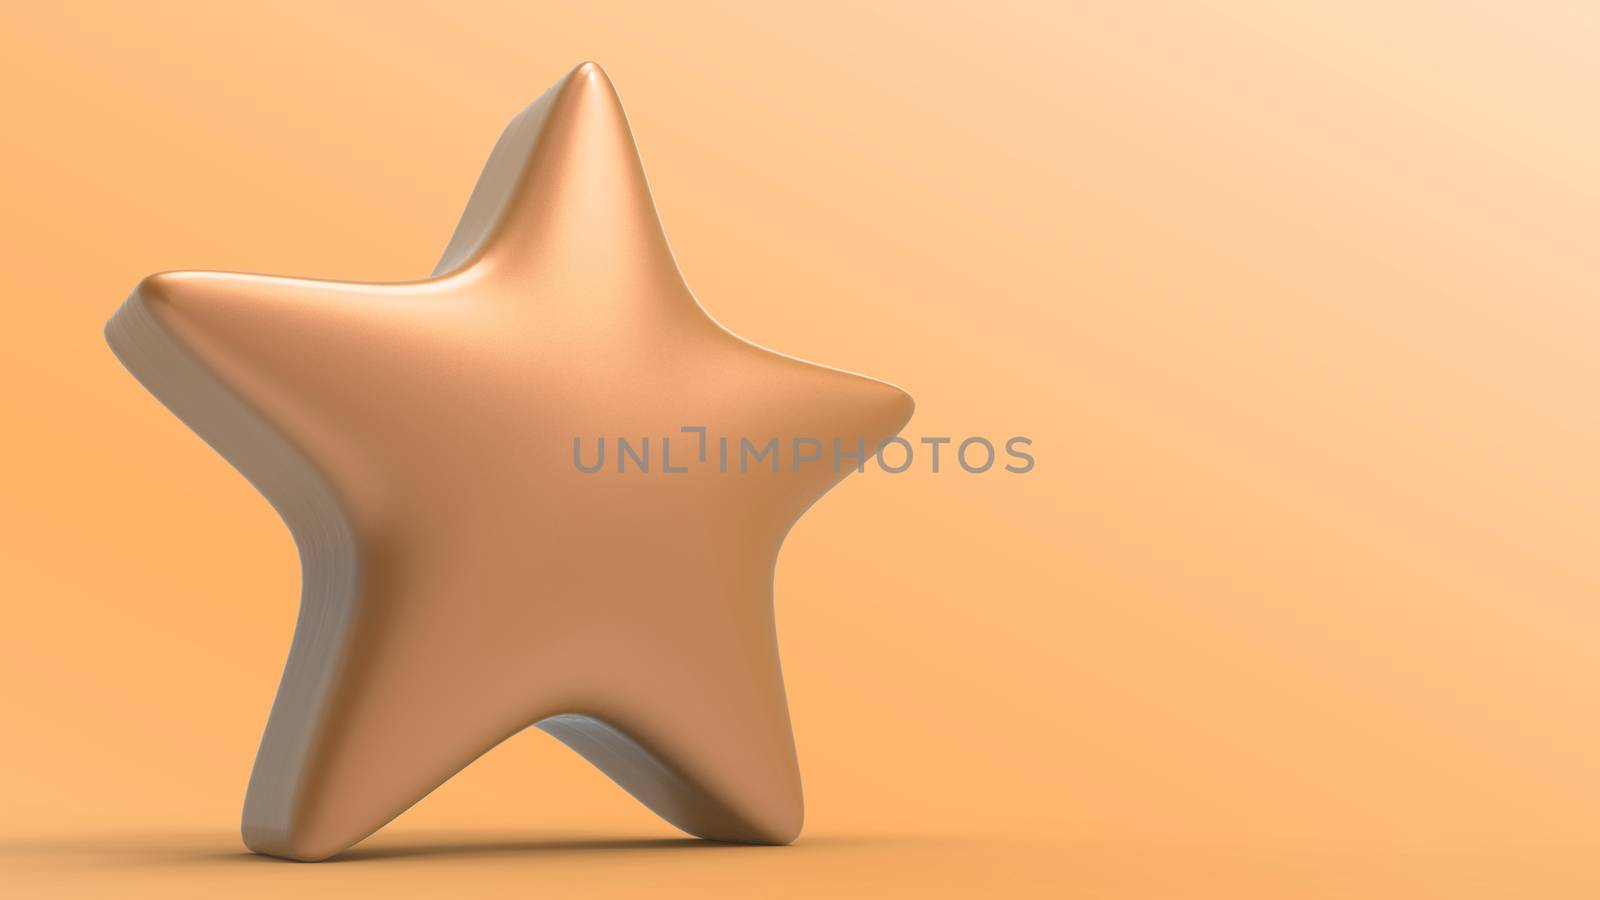 3d orange star on color background. Render and illustration of golden star for premium